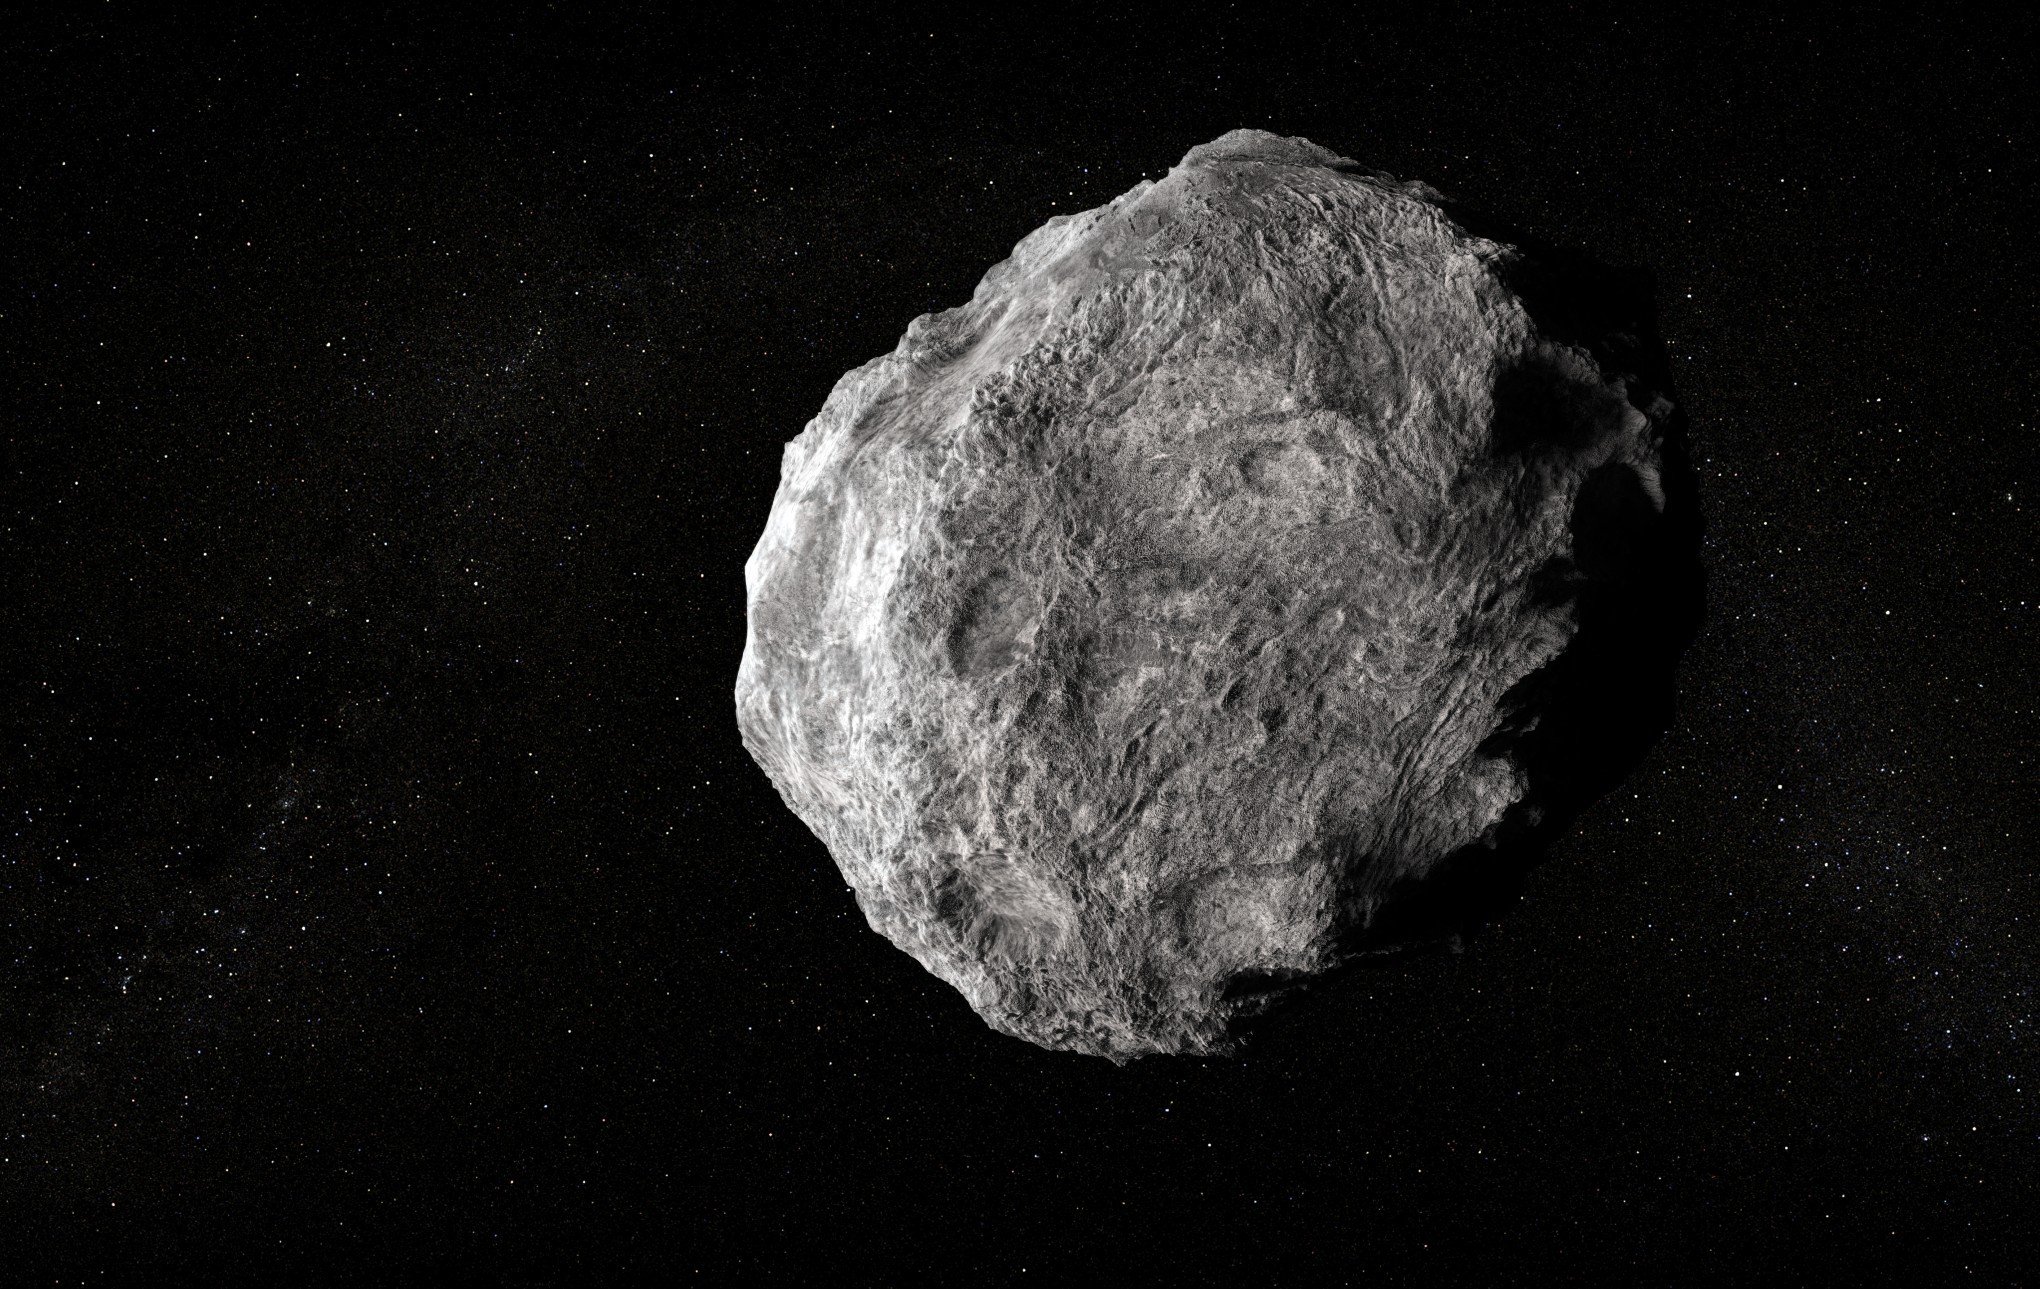 Asteroide classificado como potencialmente perigoso se aproxima da Terra nesta semana; saiba se há risco de colisão